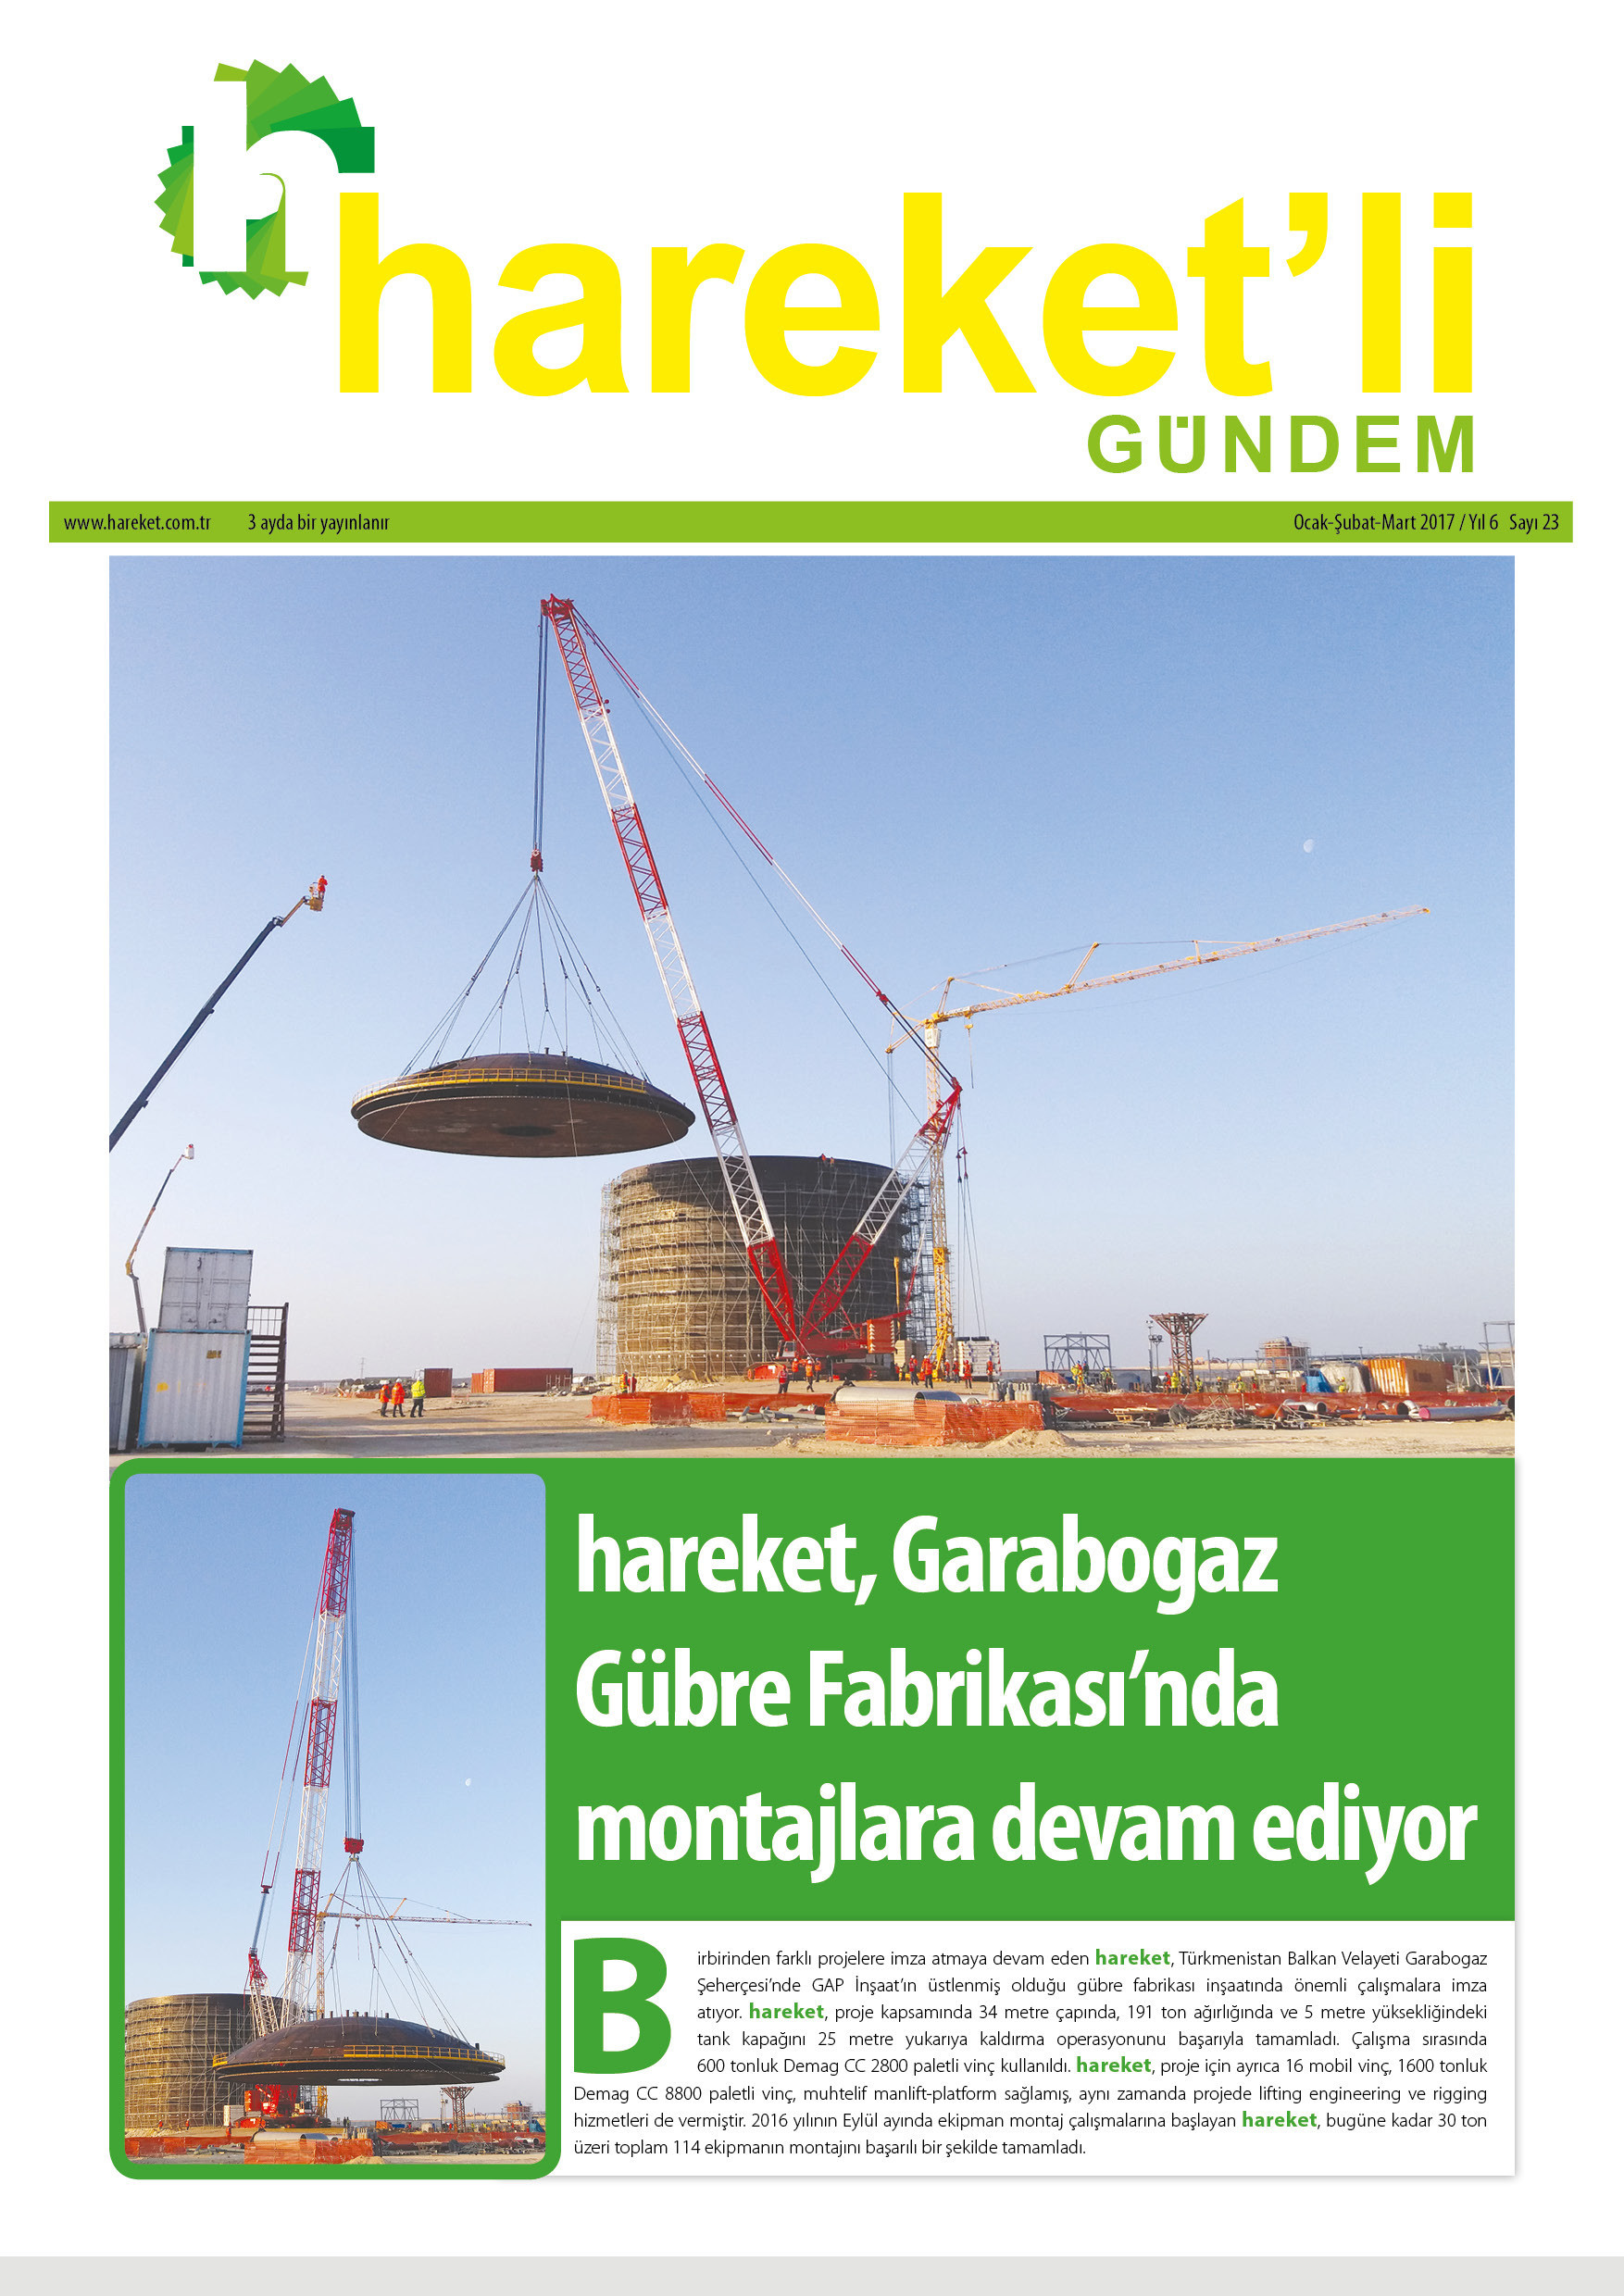 Hareket'li Gündem Magazine - ISSUE 23